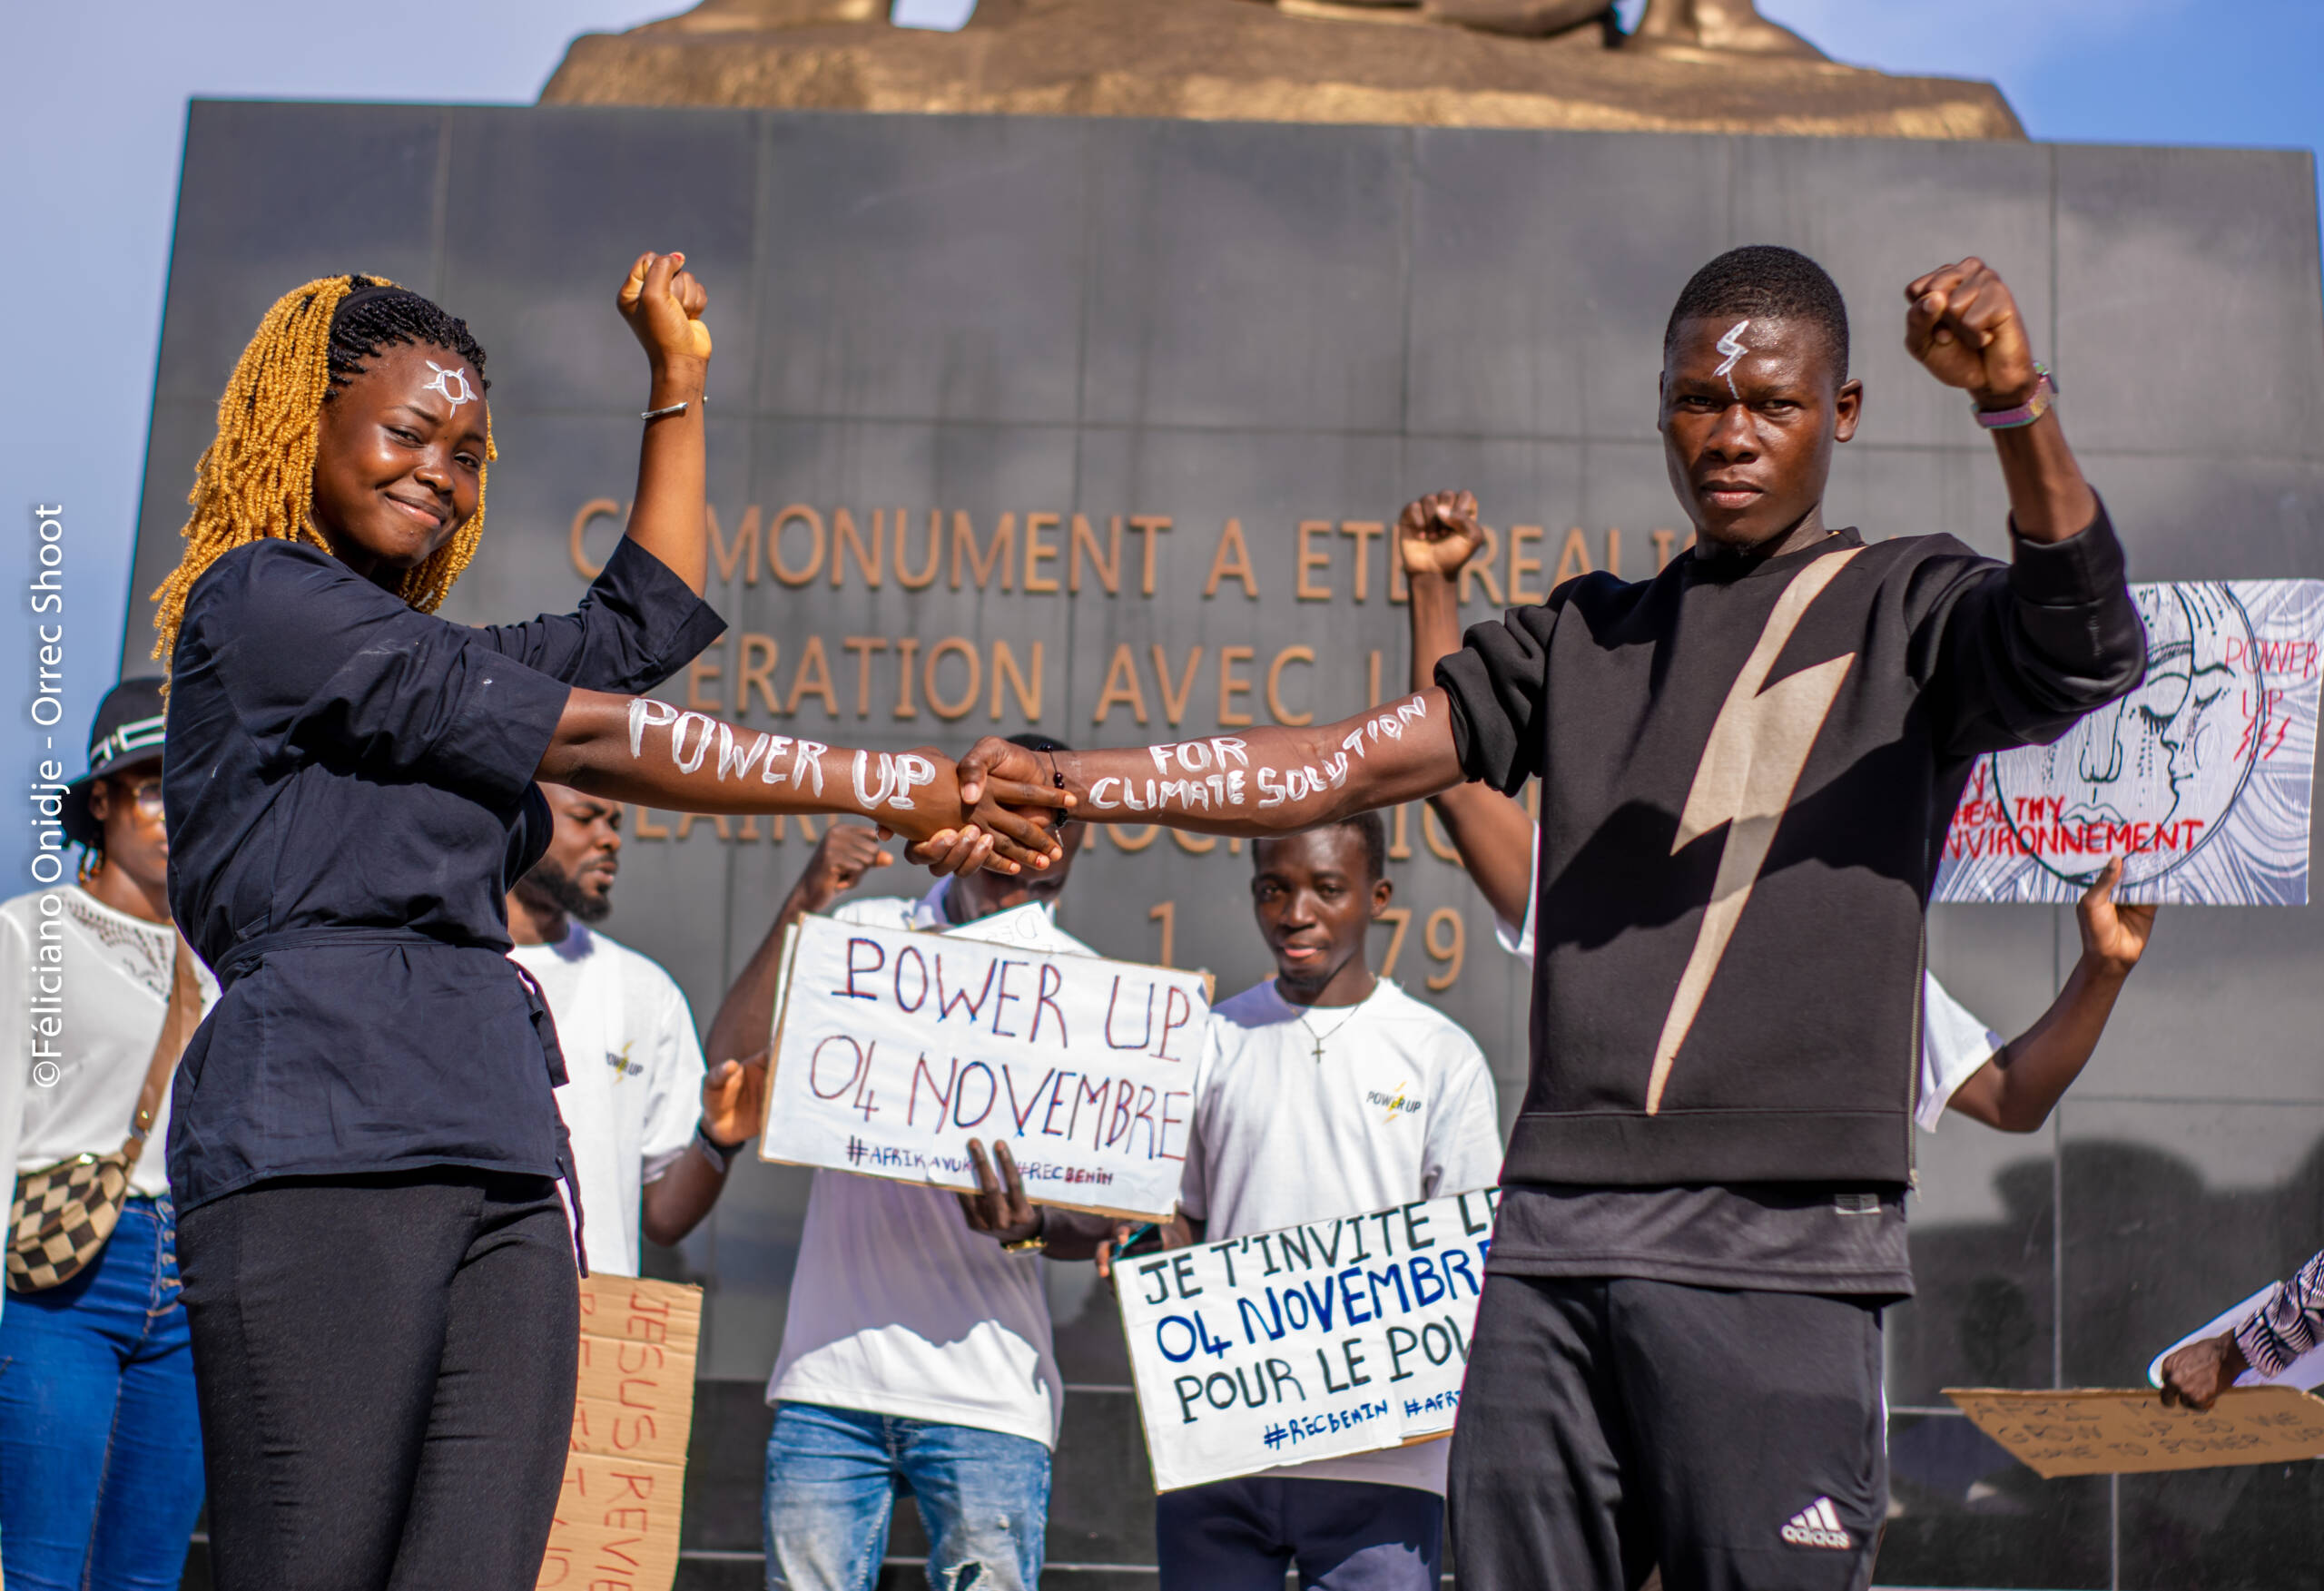 Bénin : des activistes ont sensibilisé le public, recruté des soutiens et puisé dans leur créativité pour préparer des actions Power Up. Crédit photo : 350 Africa